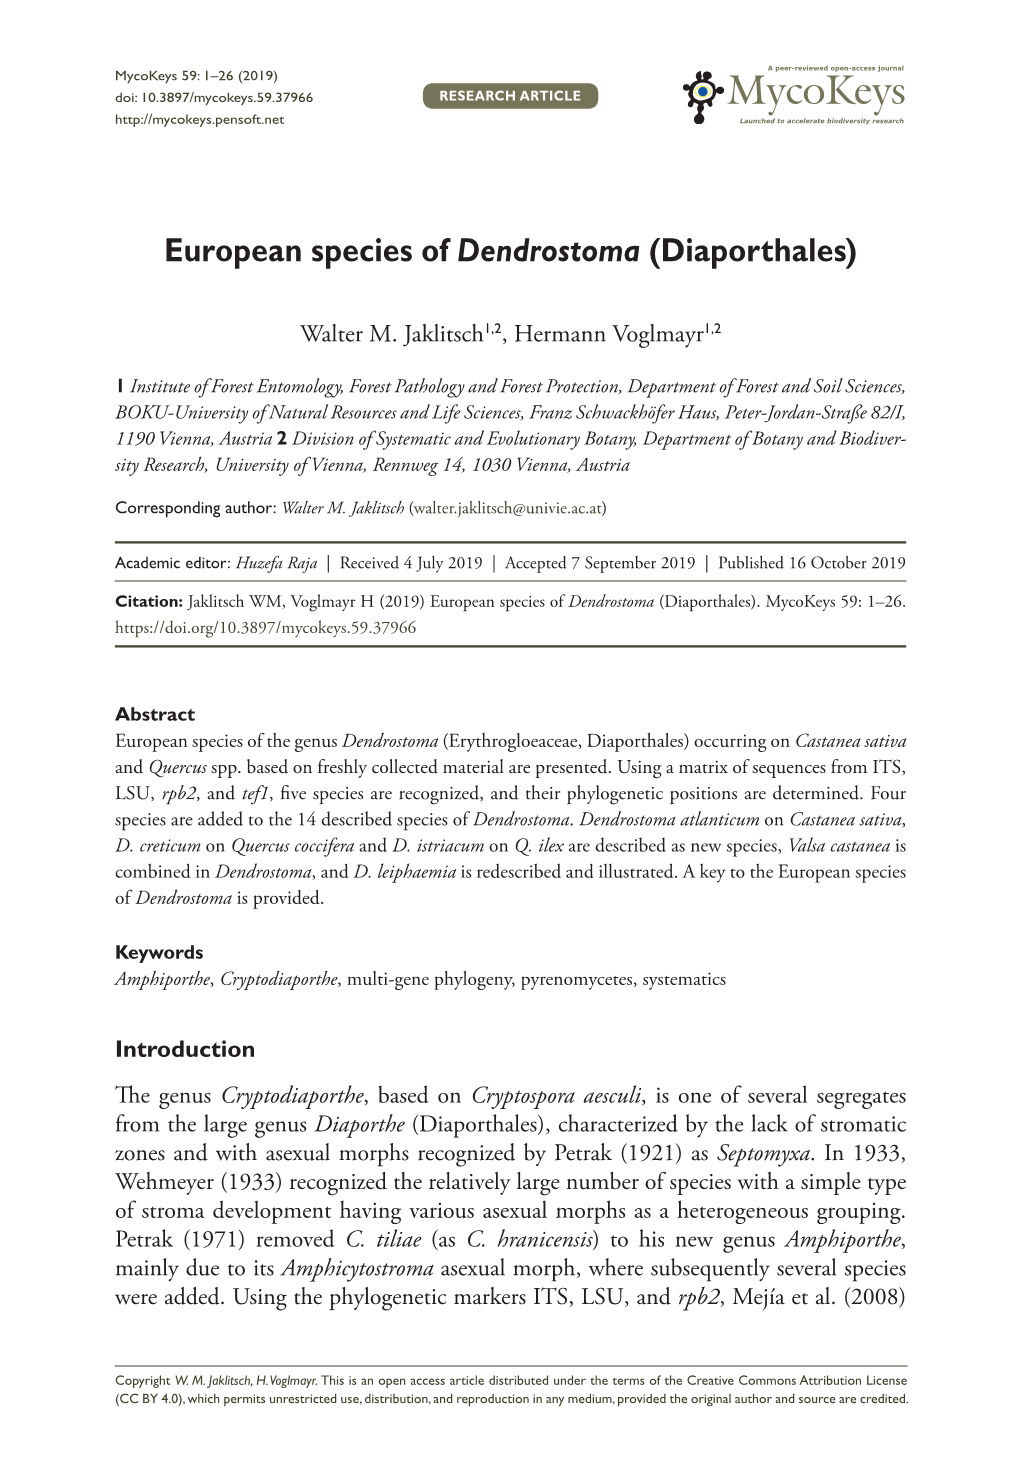 European Species of Dendrostoma (Diaporthales)